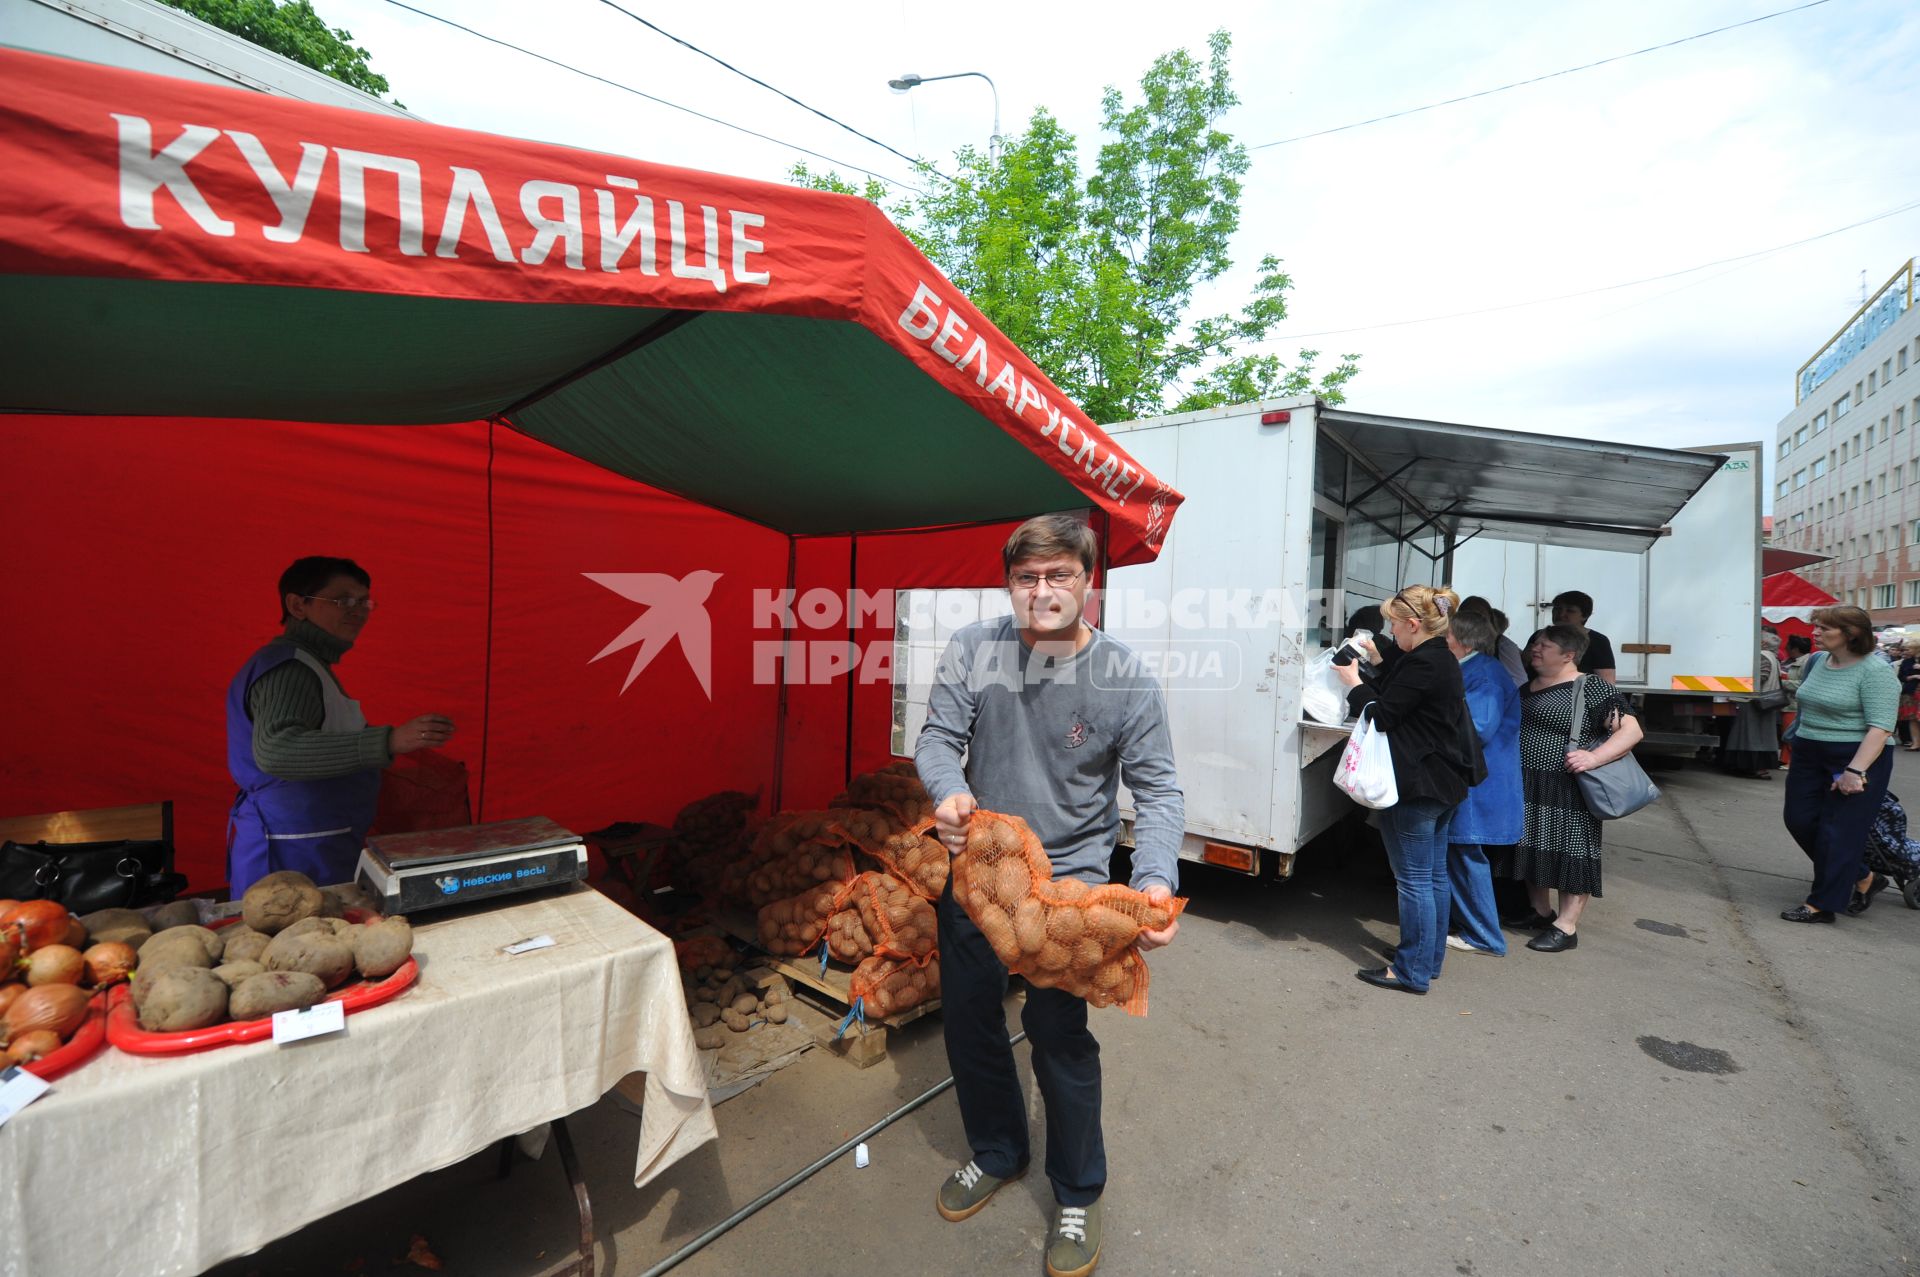 Белорусская ярмарка. На снимке: мужчина держит в руках сетку с картофелем.